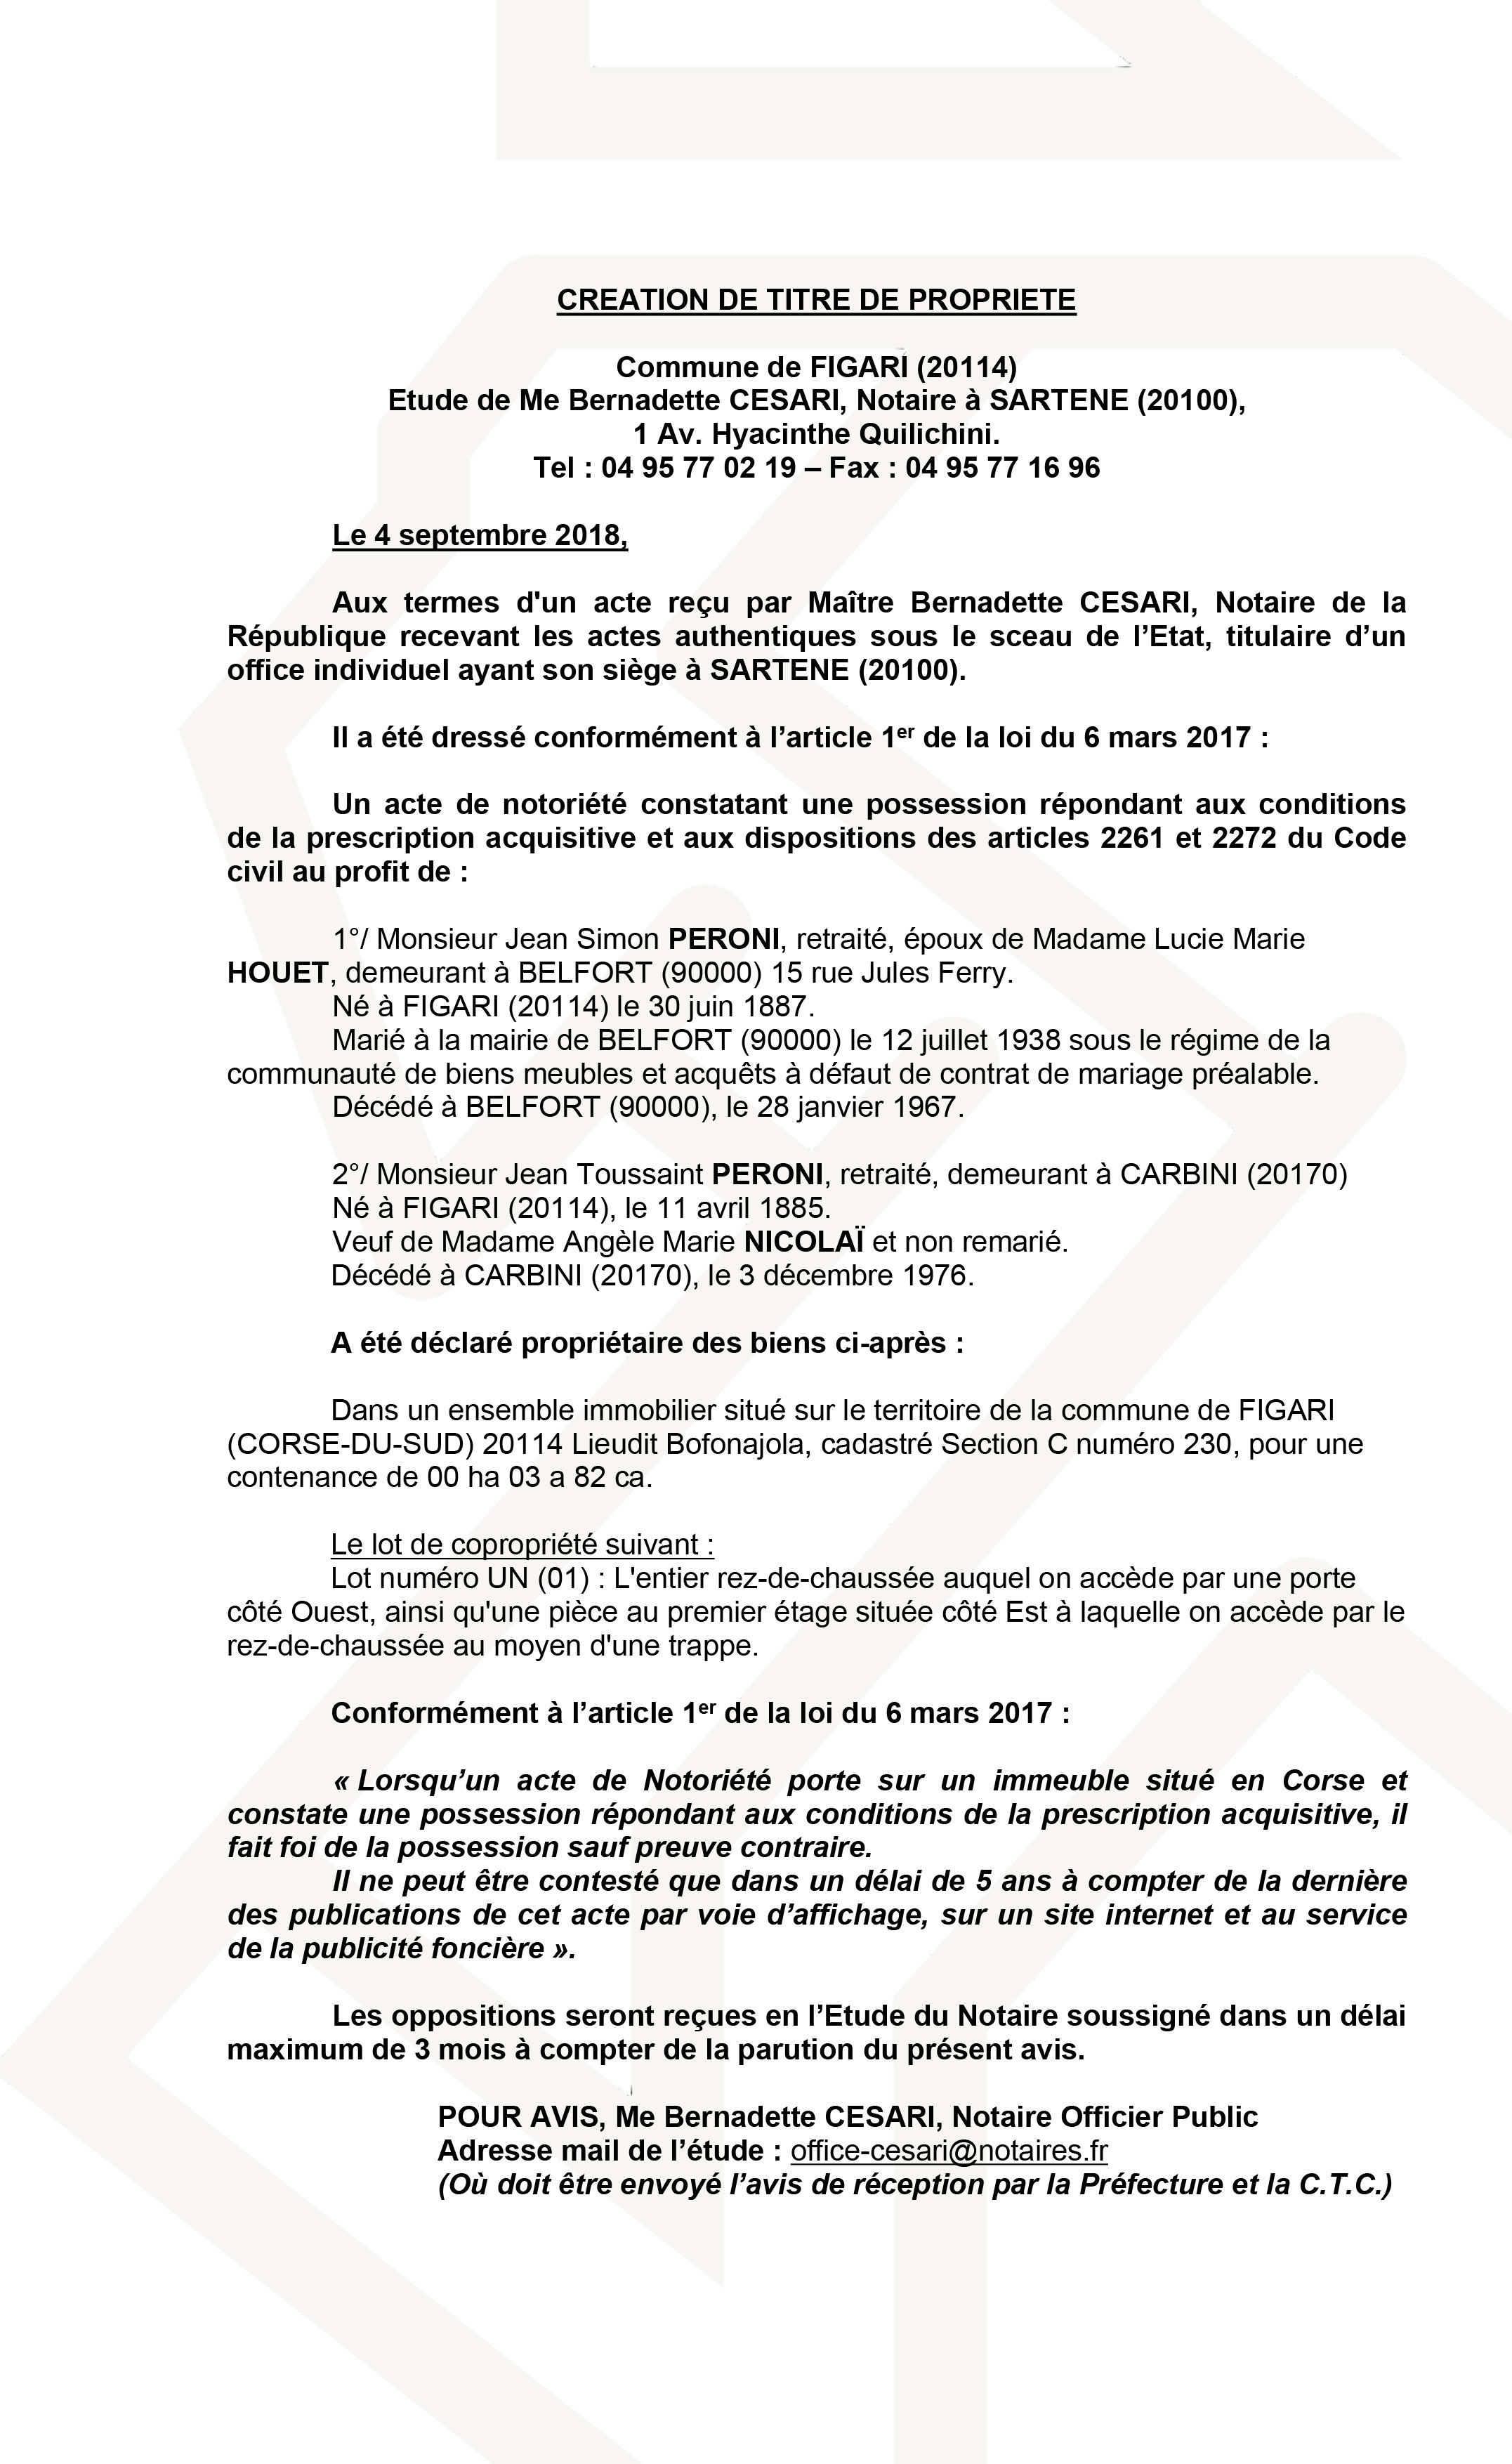 Avis de création de titre de propriété - commune de Figari (Corse du Sud)